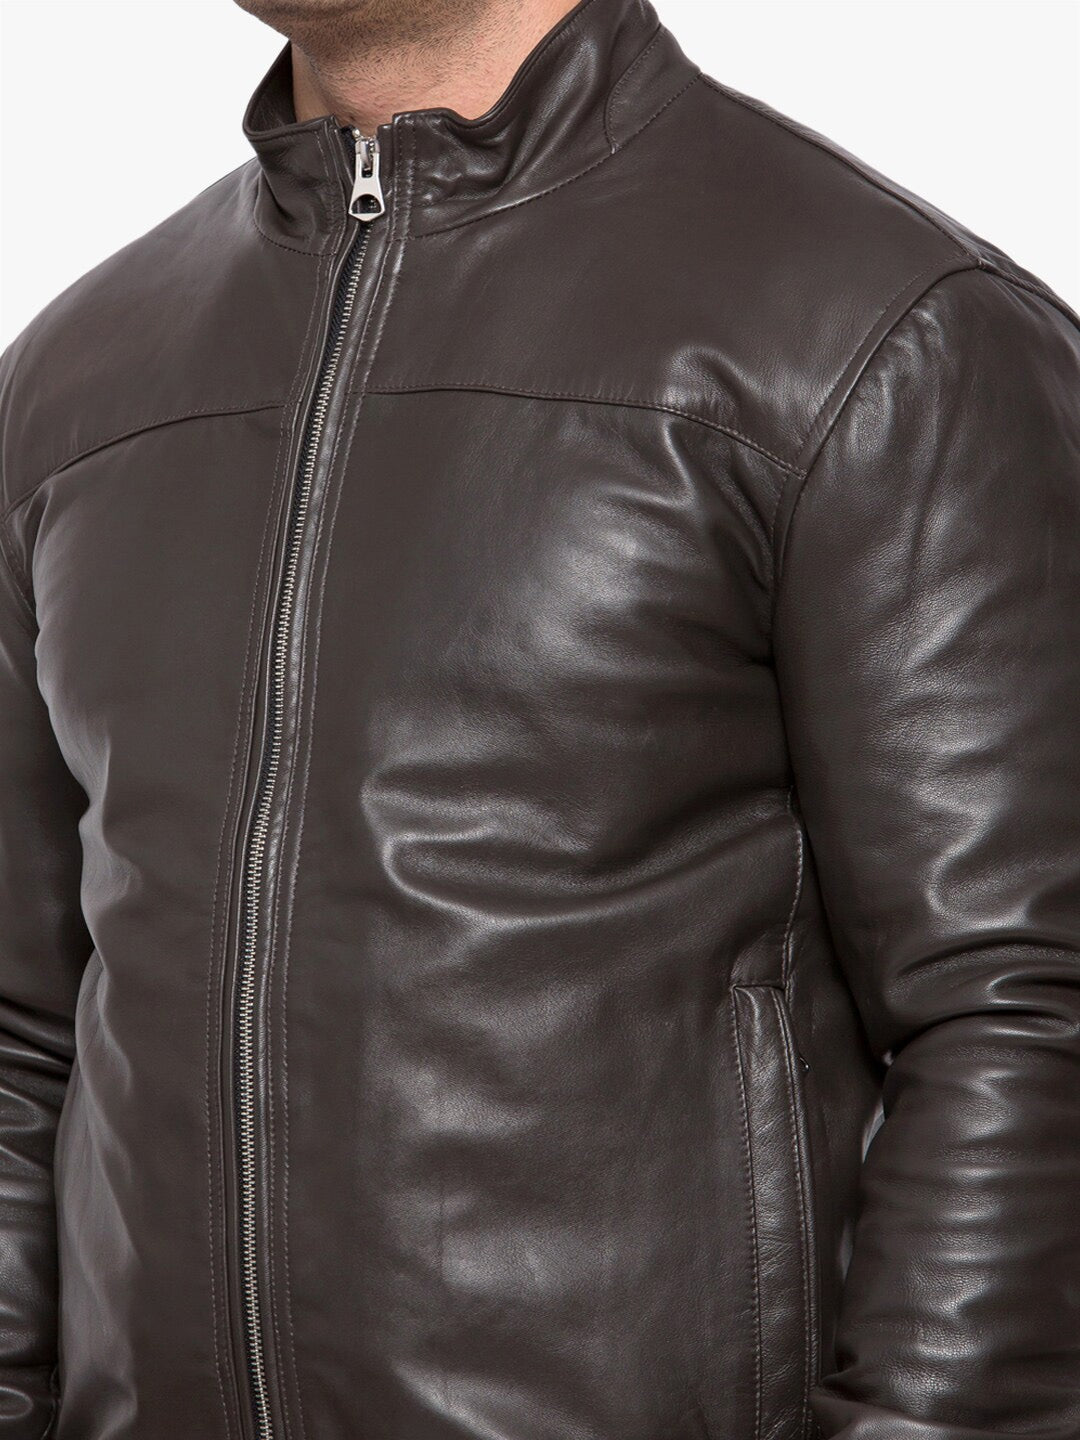 Men Brown Leather Outdoor Biker Jacket Online | QAWACH